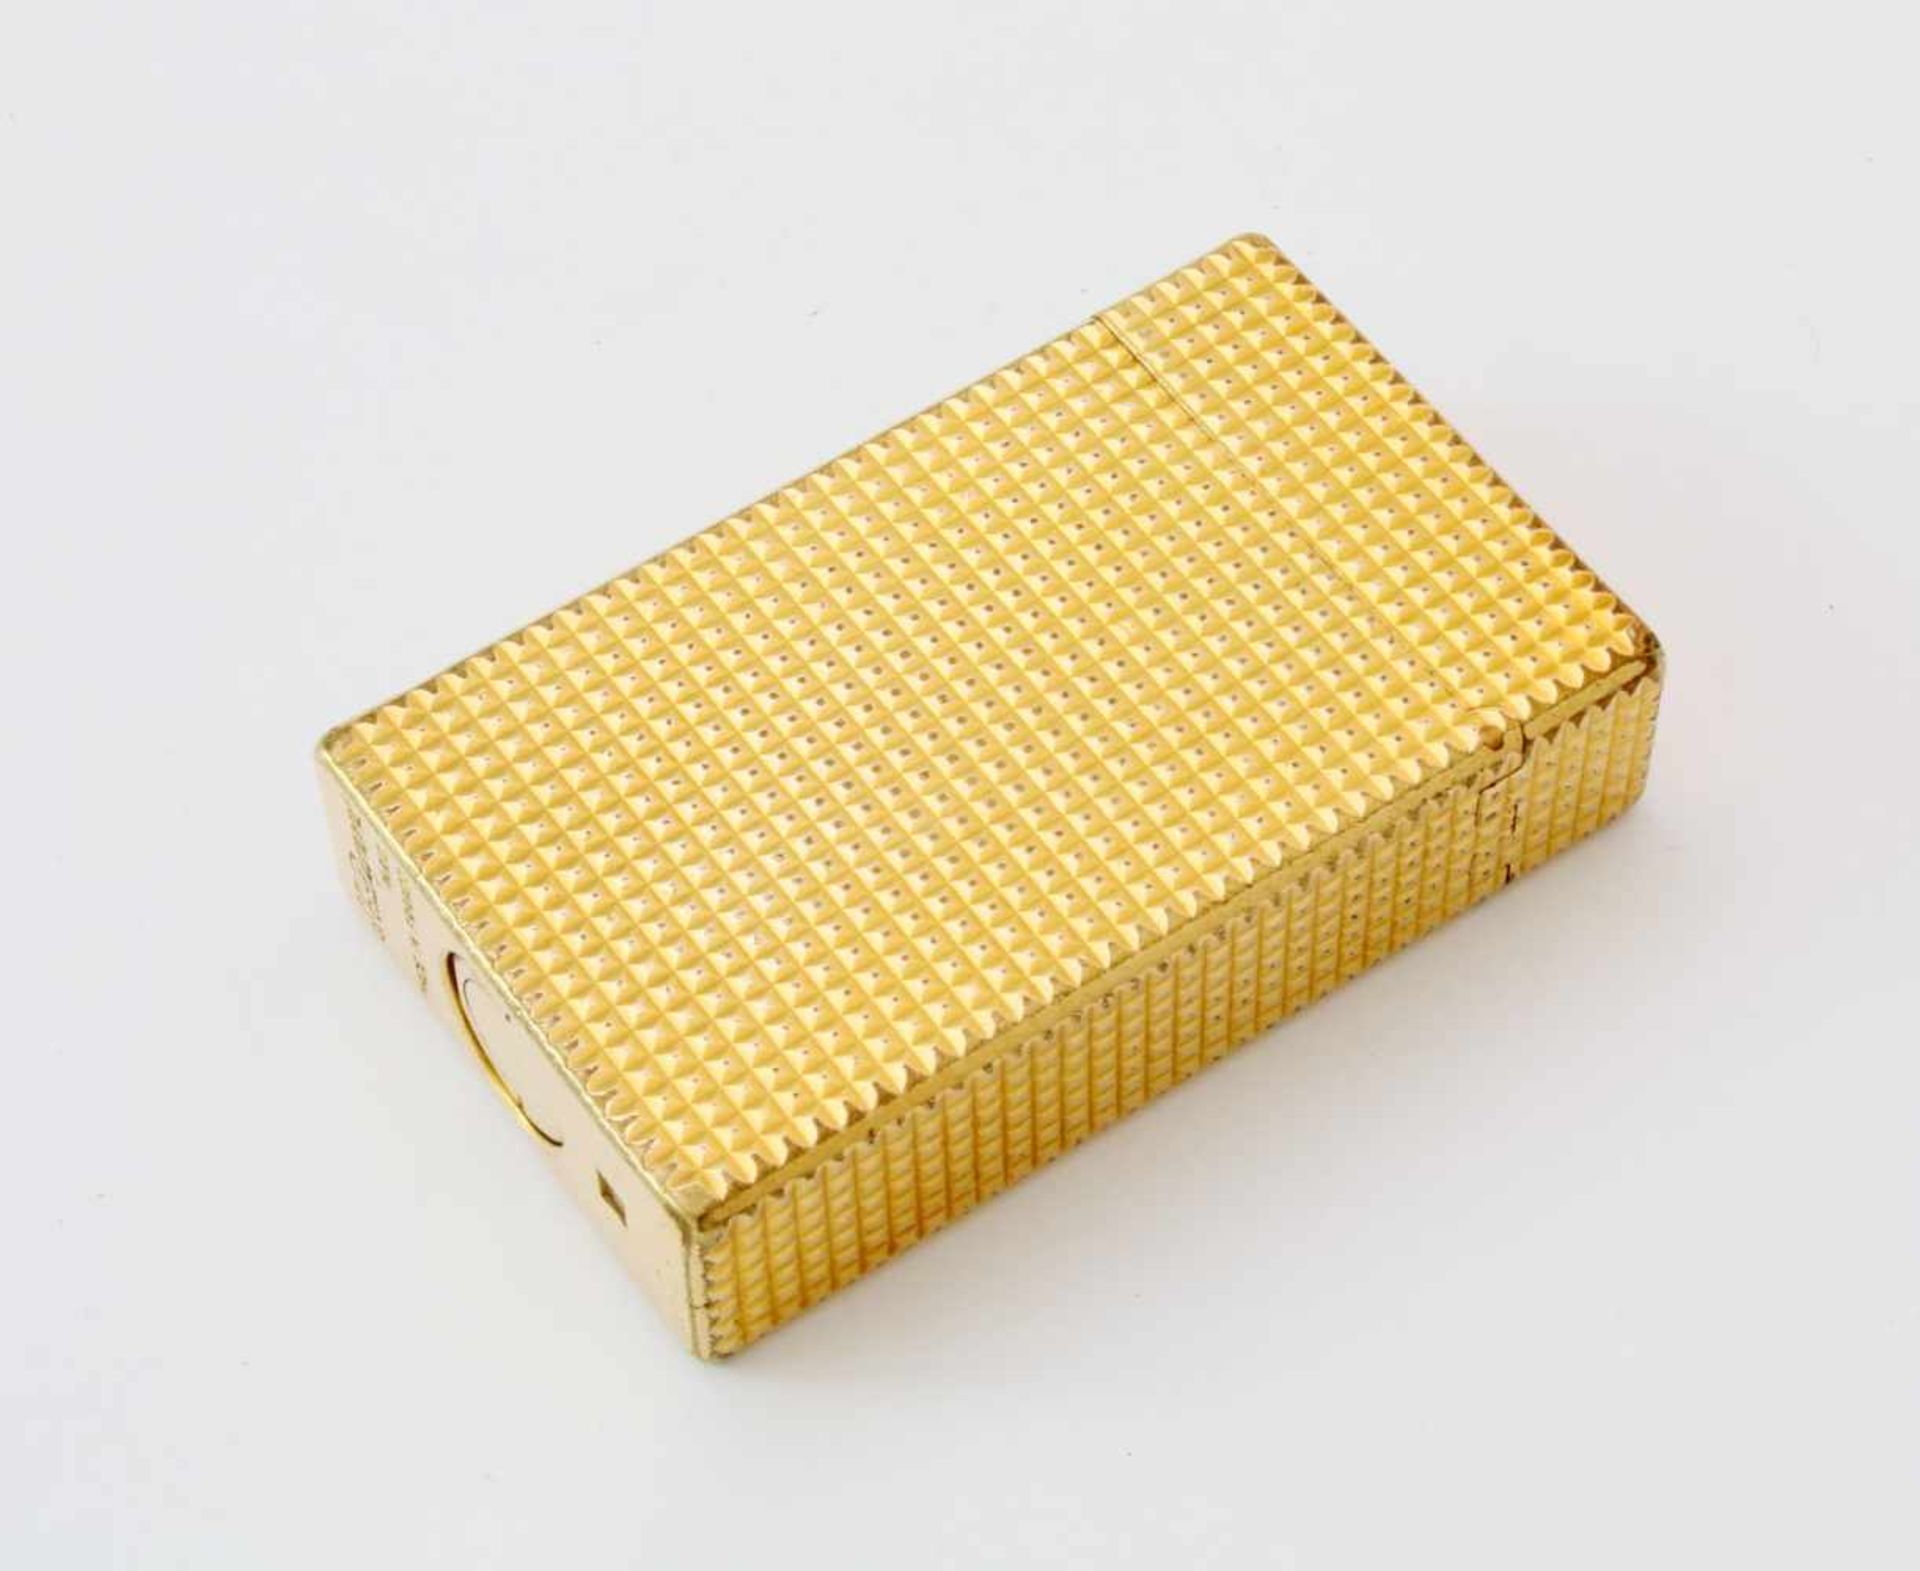 Vergoldetes Dupont FeuerzeugGewaffelte Oberfläche, noch alte 20 µm Vergoldung, Gebrauchsspuren, - Image 2 of 4